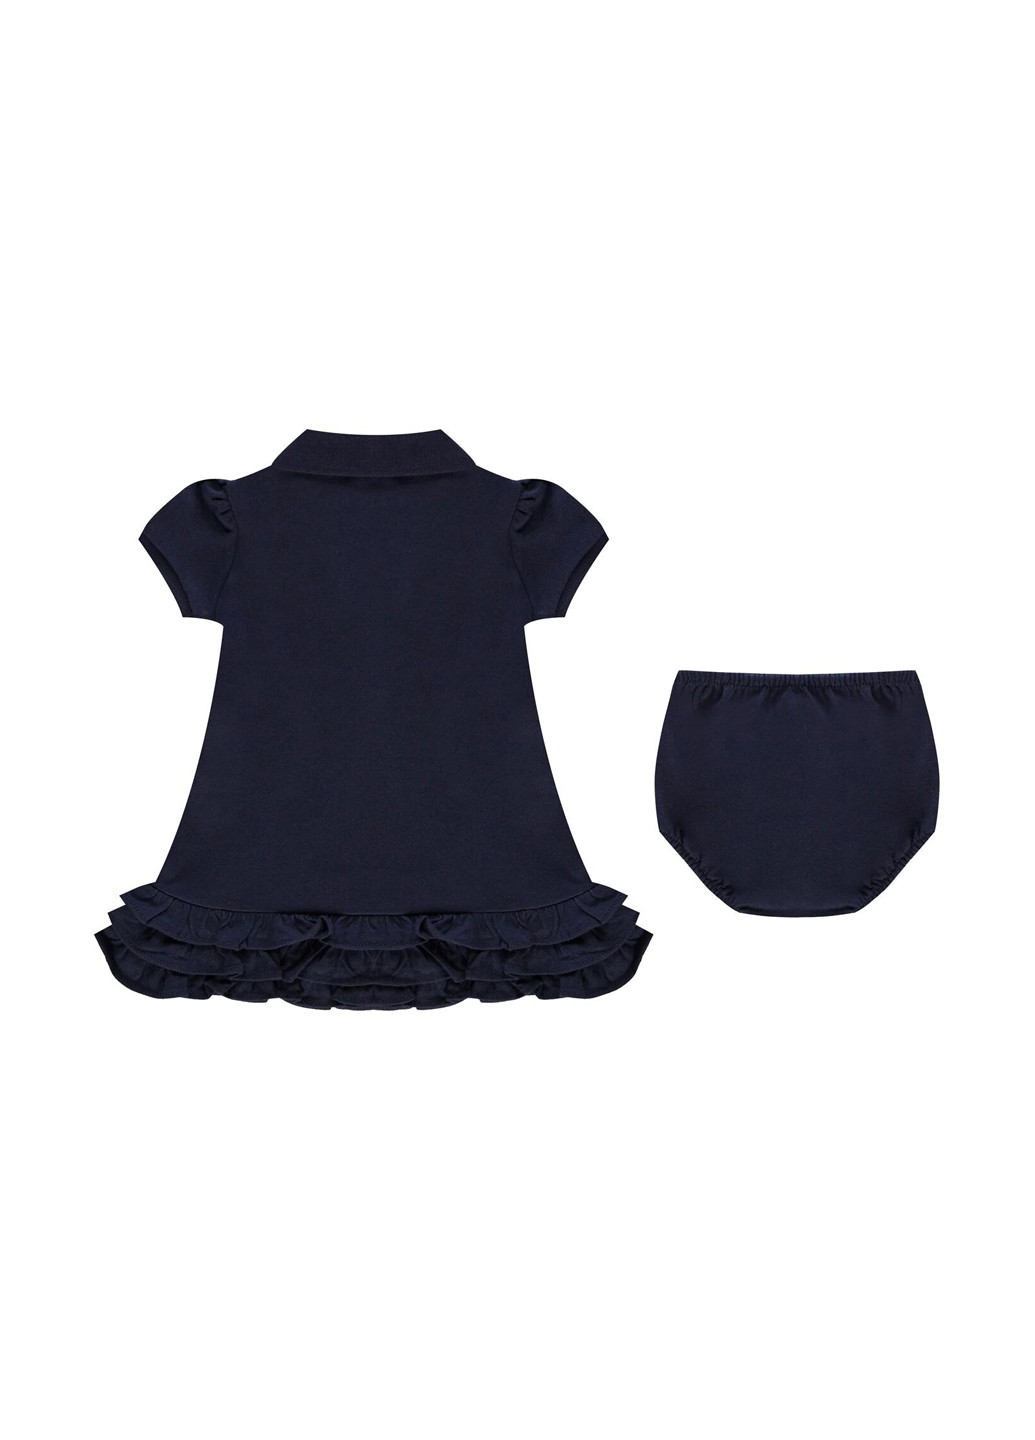 Темно-синий летний комплект (платье, трусики) Ralph Lauren